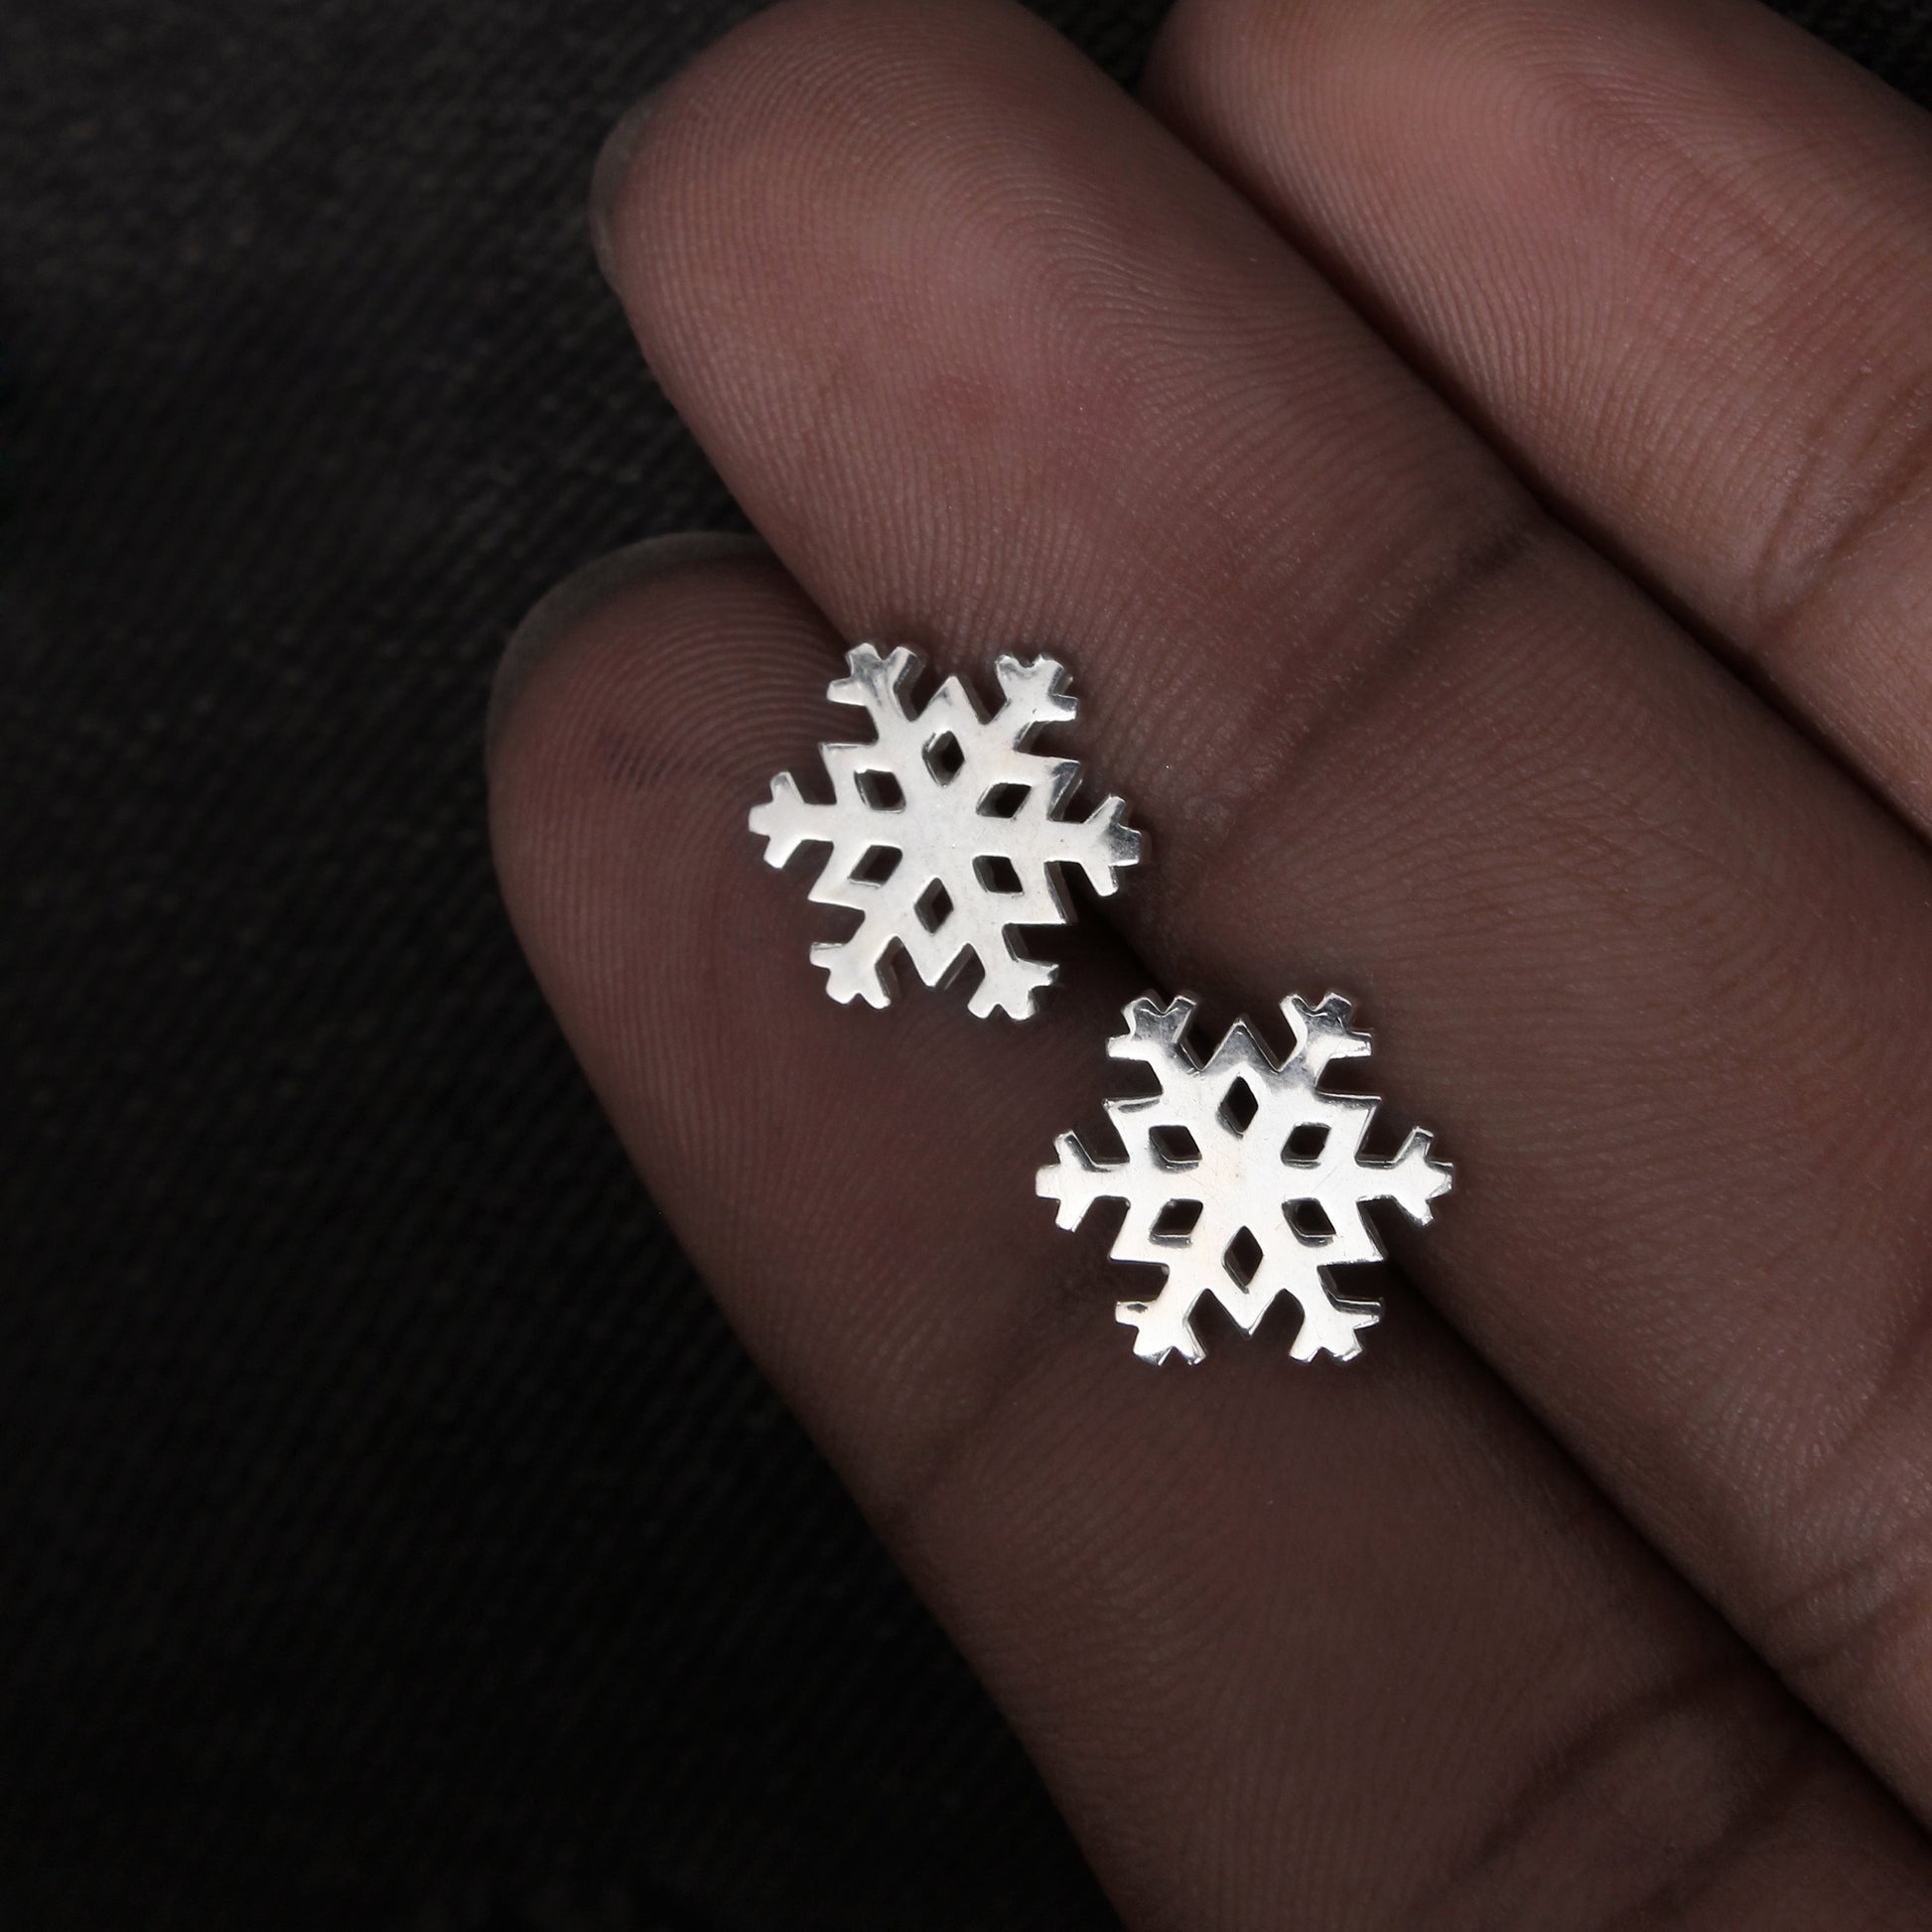 Snowflake Stud Silver Earring GemsRush